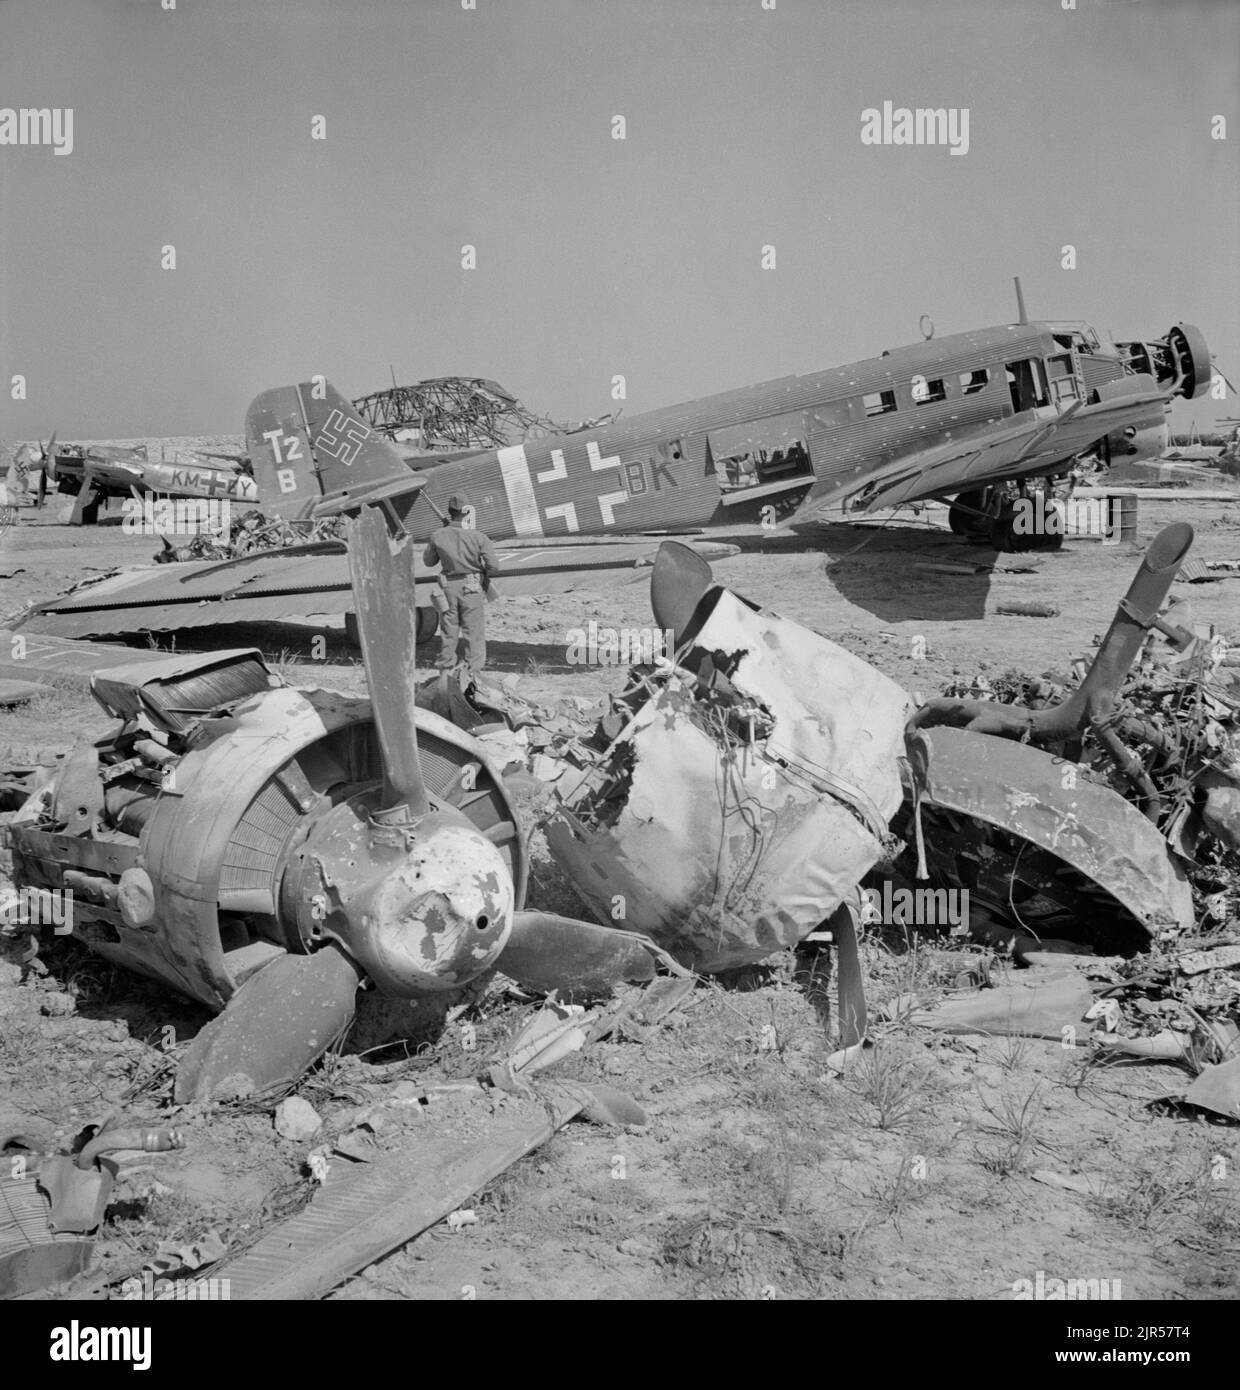 Une photo d'époque vers mai 1943 montrant un avion de transport allemand Junkers JU52 détruit à El Aouiana Tunisie après la défaite des forces de l'axe en Afrique du Nord Banque D'Images